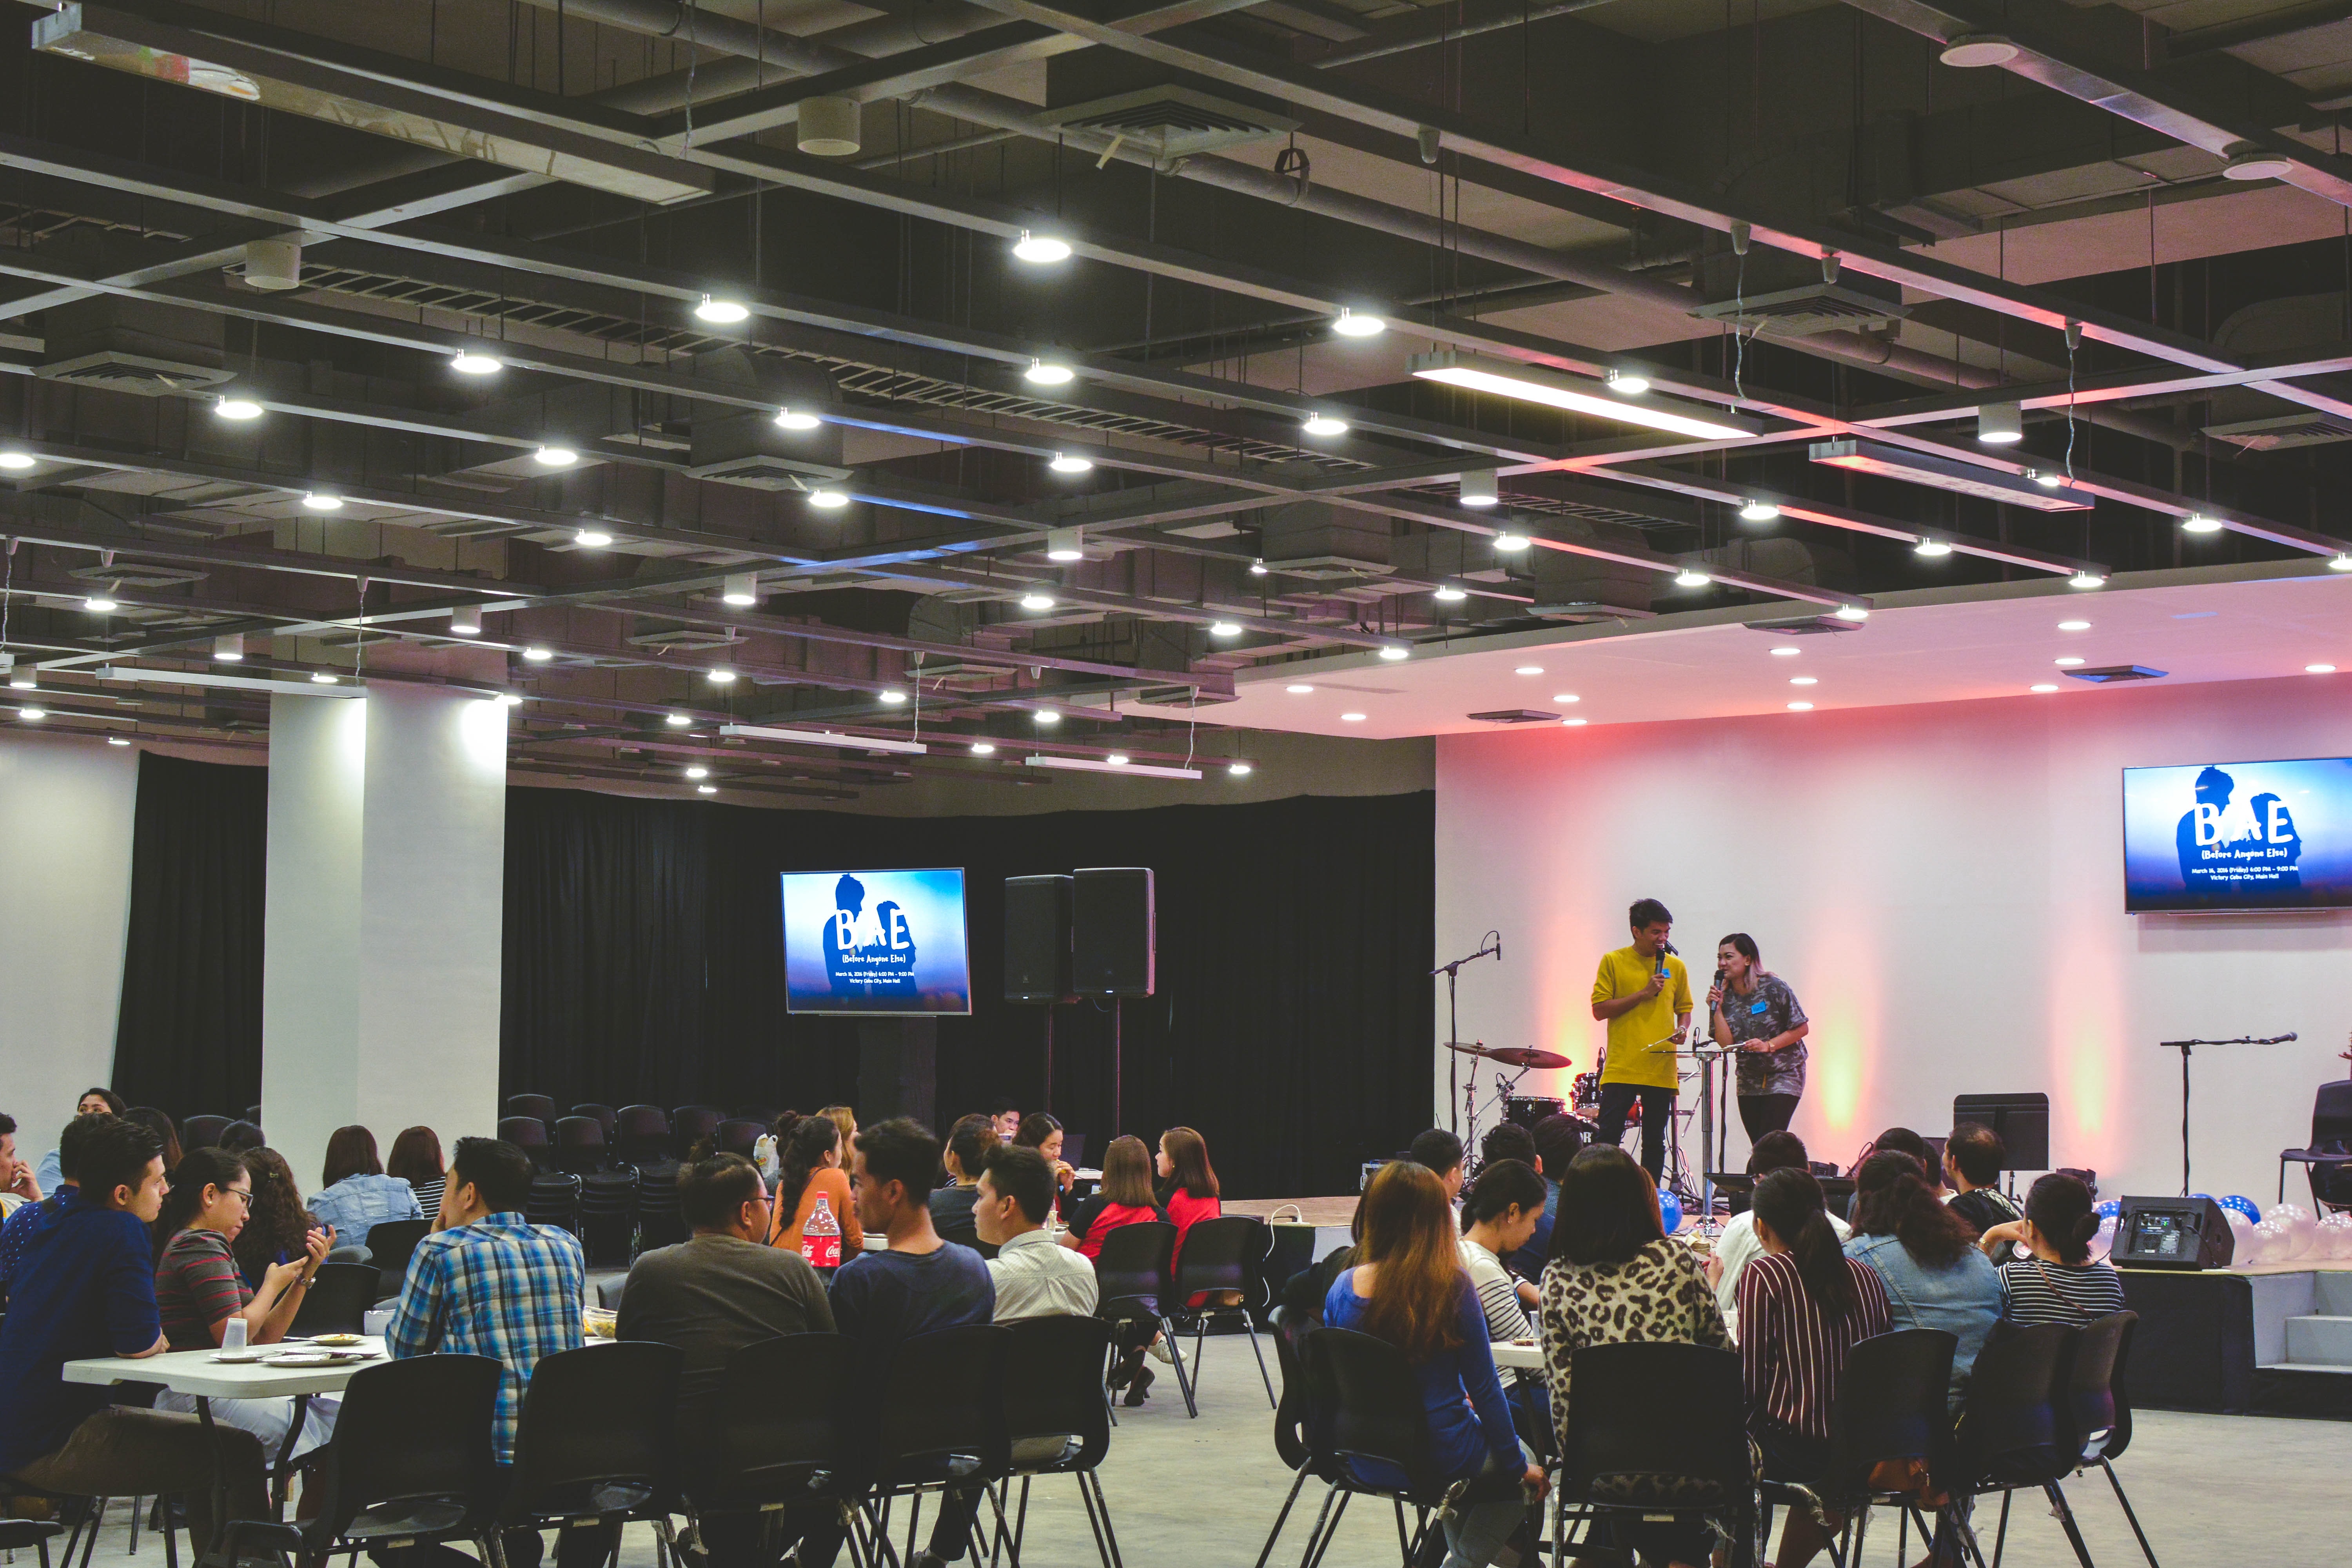 Eine Konferenz mit vielen jungen Zuhörern die auf einen Bildschirm blicken. Events wie diese können von einem Liveblog begleitet werden.